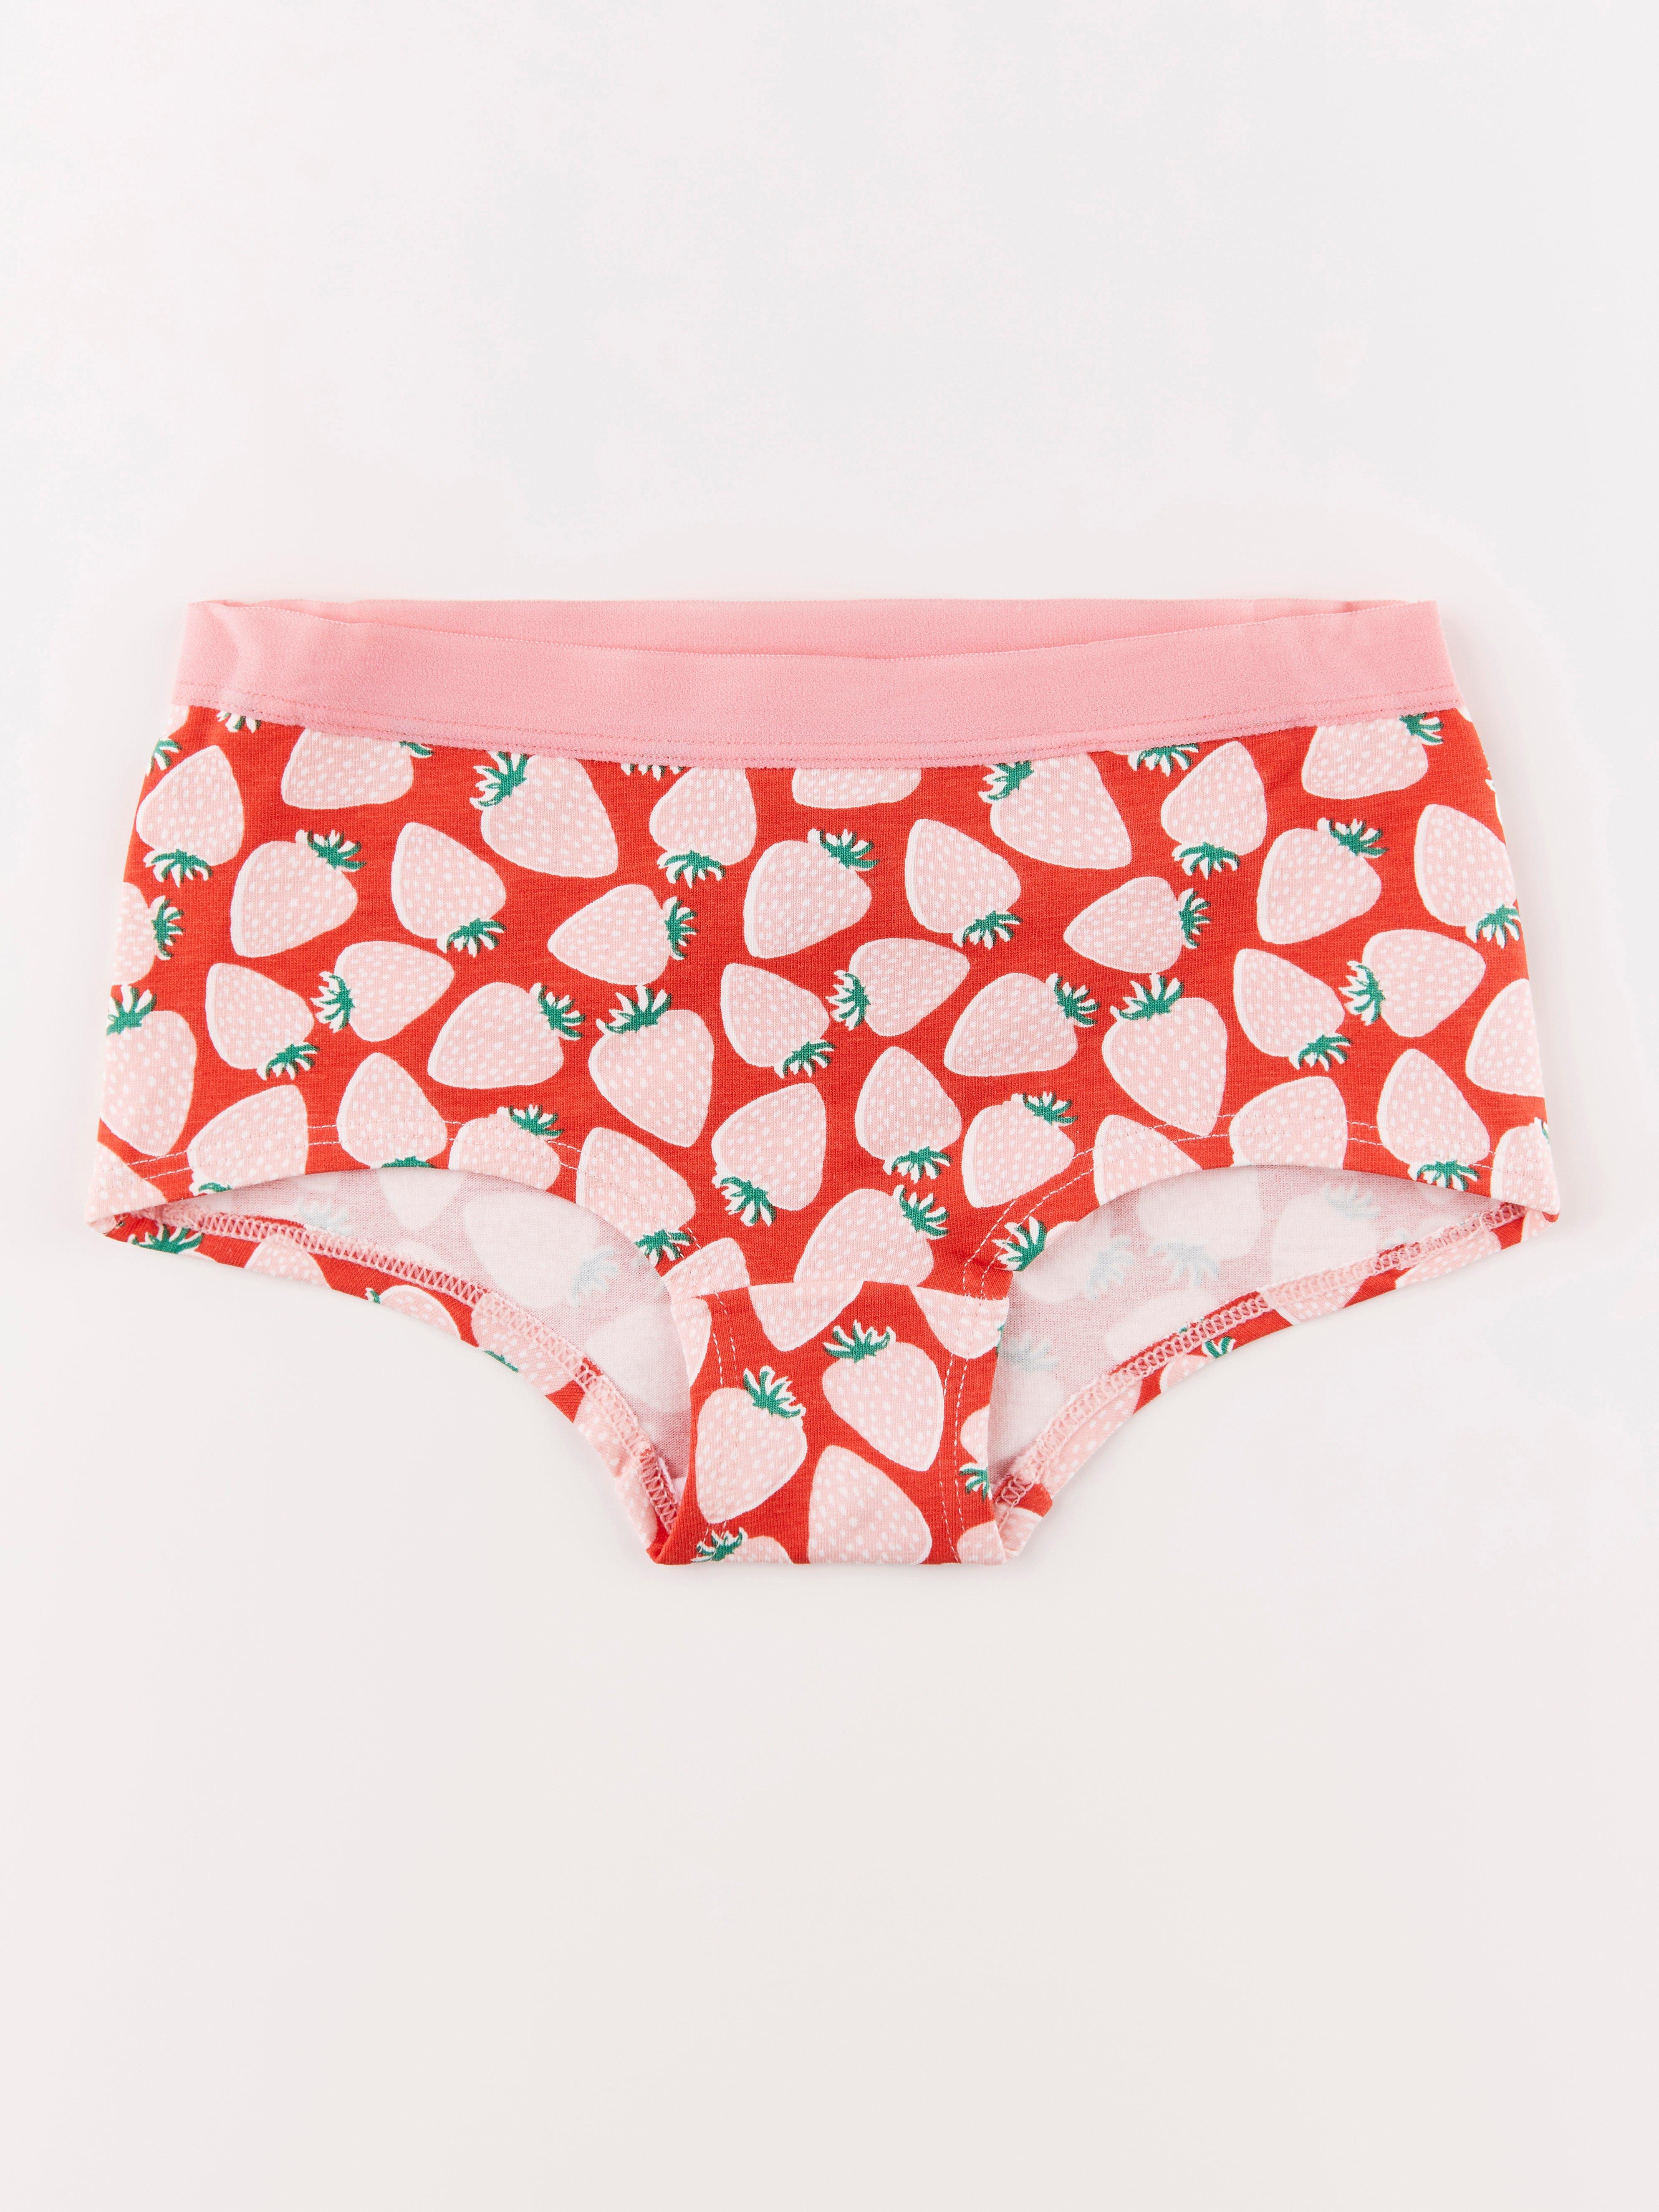 Strawberries Panties, Strawberries Underwear, Briefs, Cotton